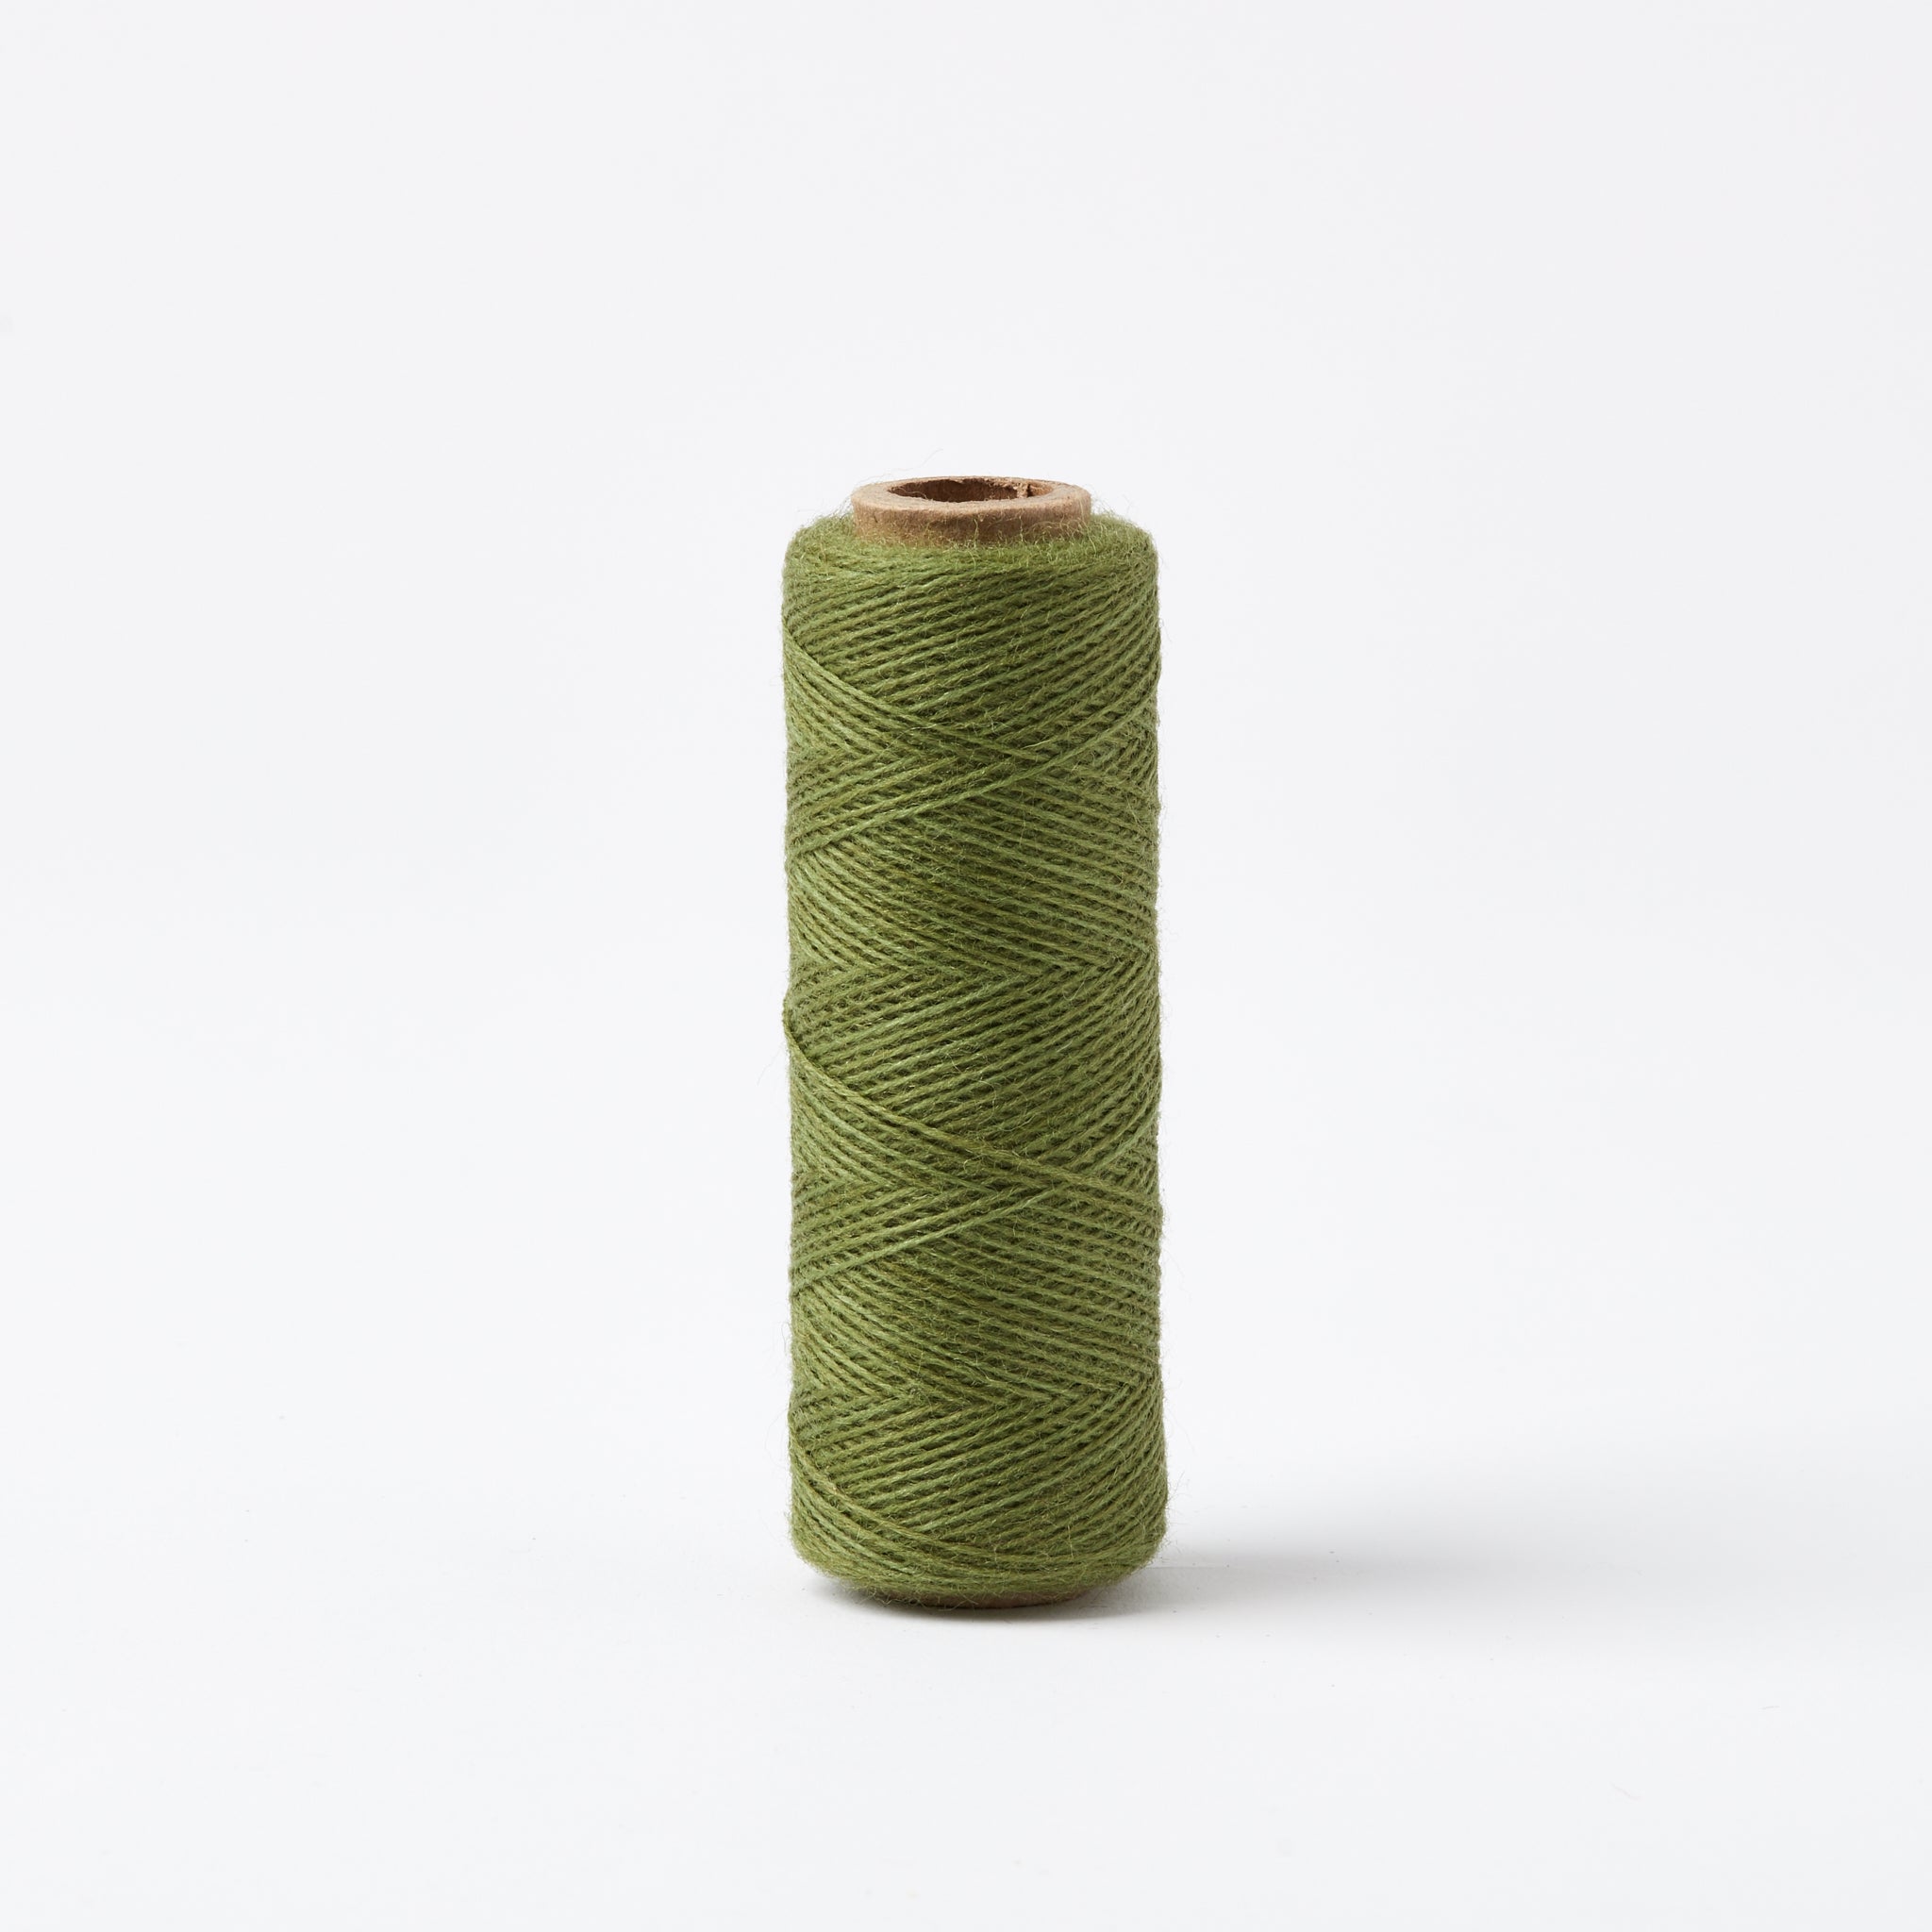 Array Wool Yarn ~ Black - Gist Yarn